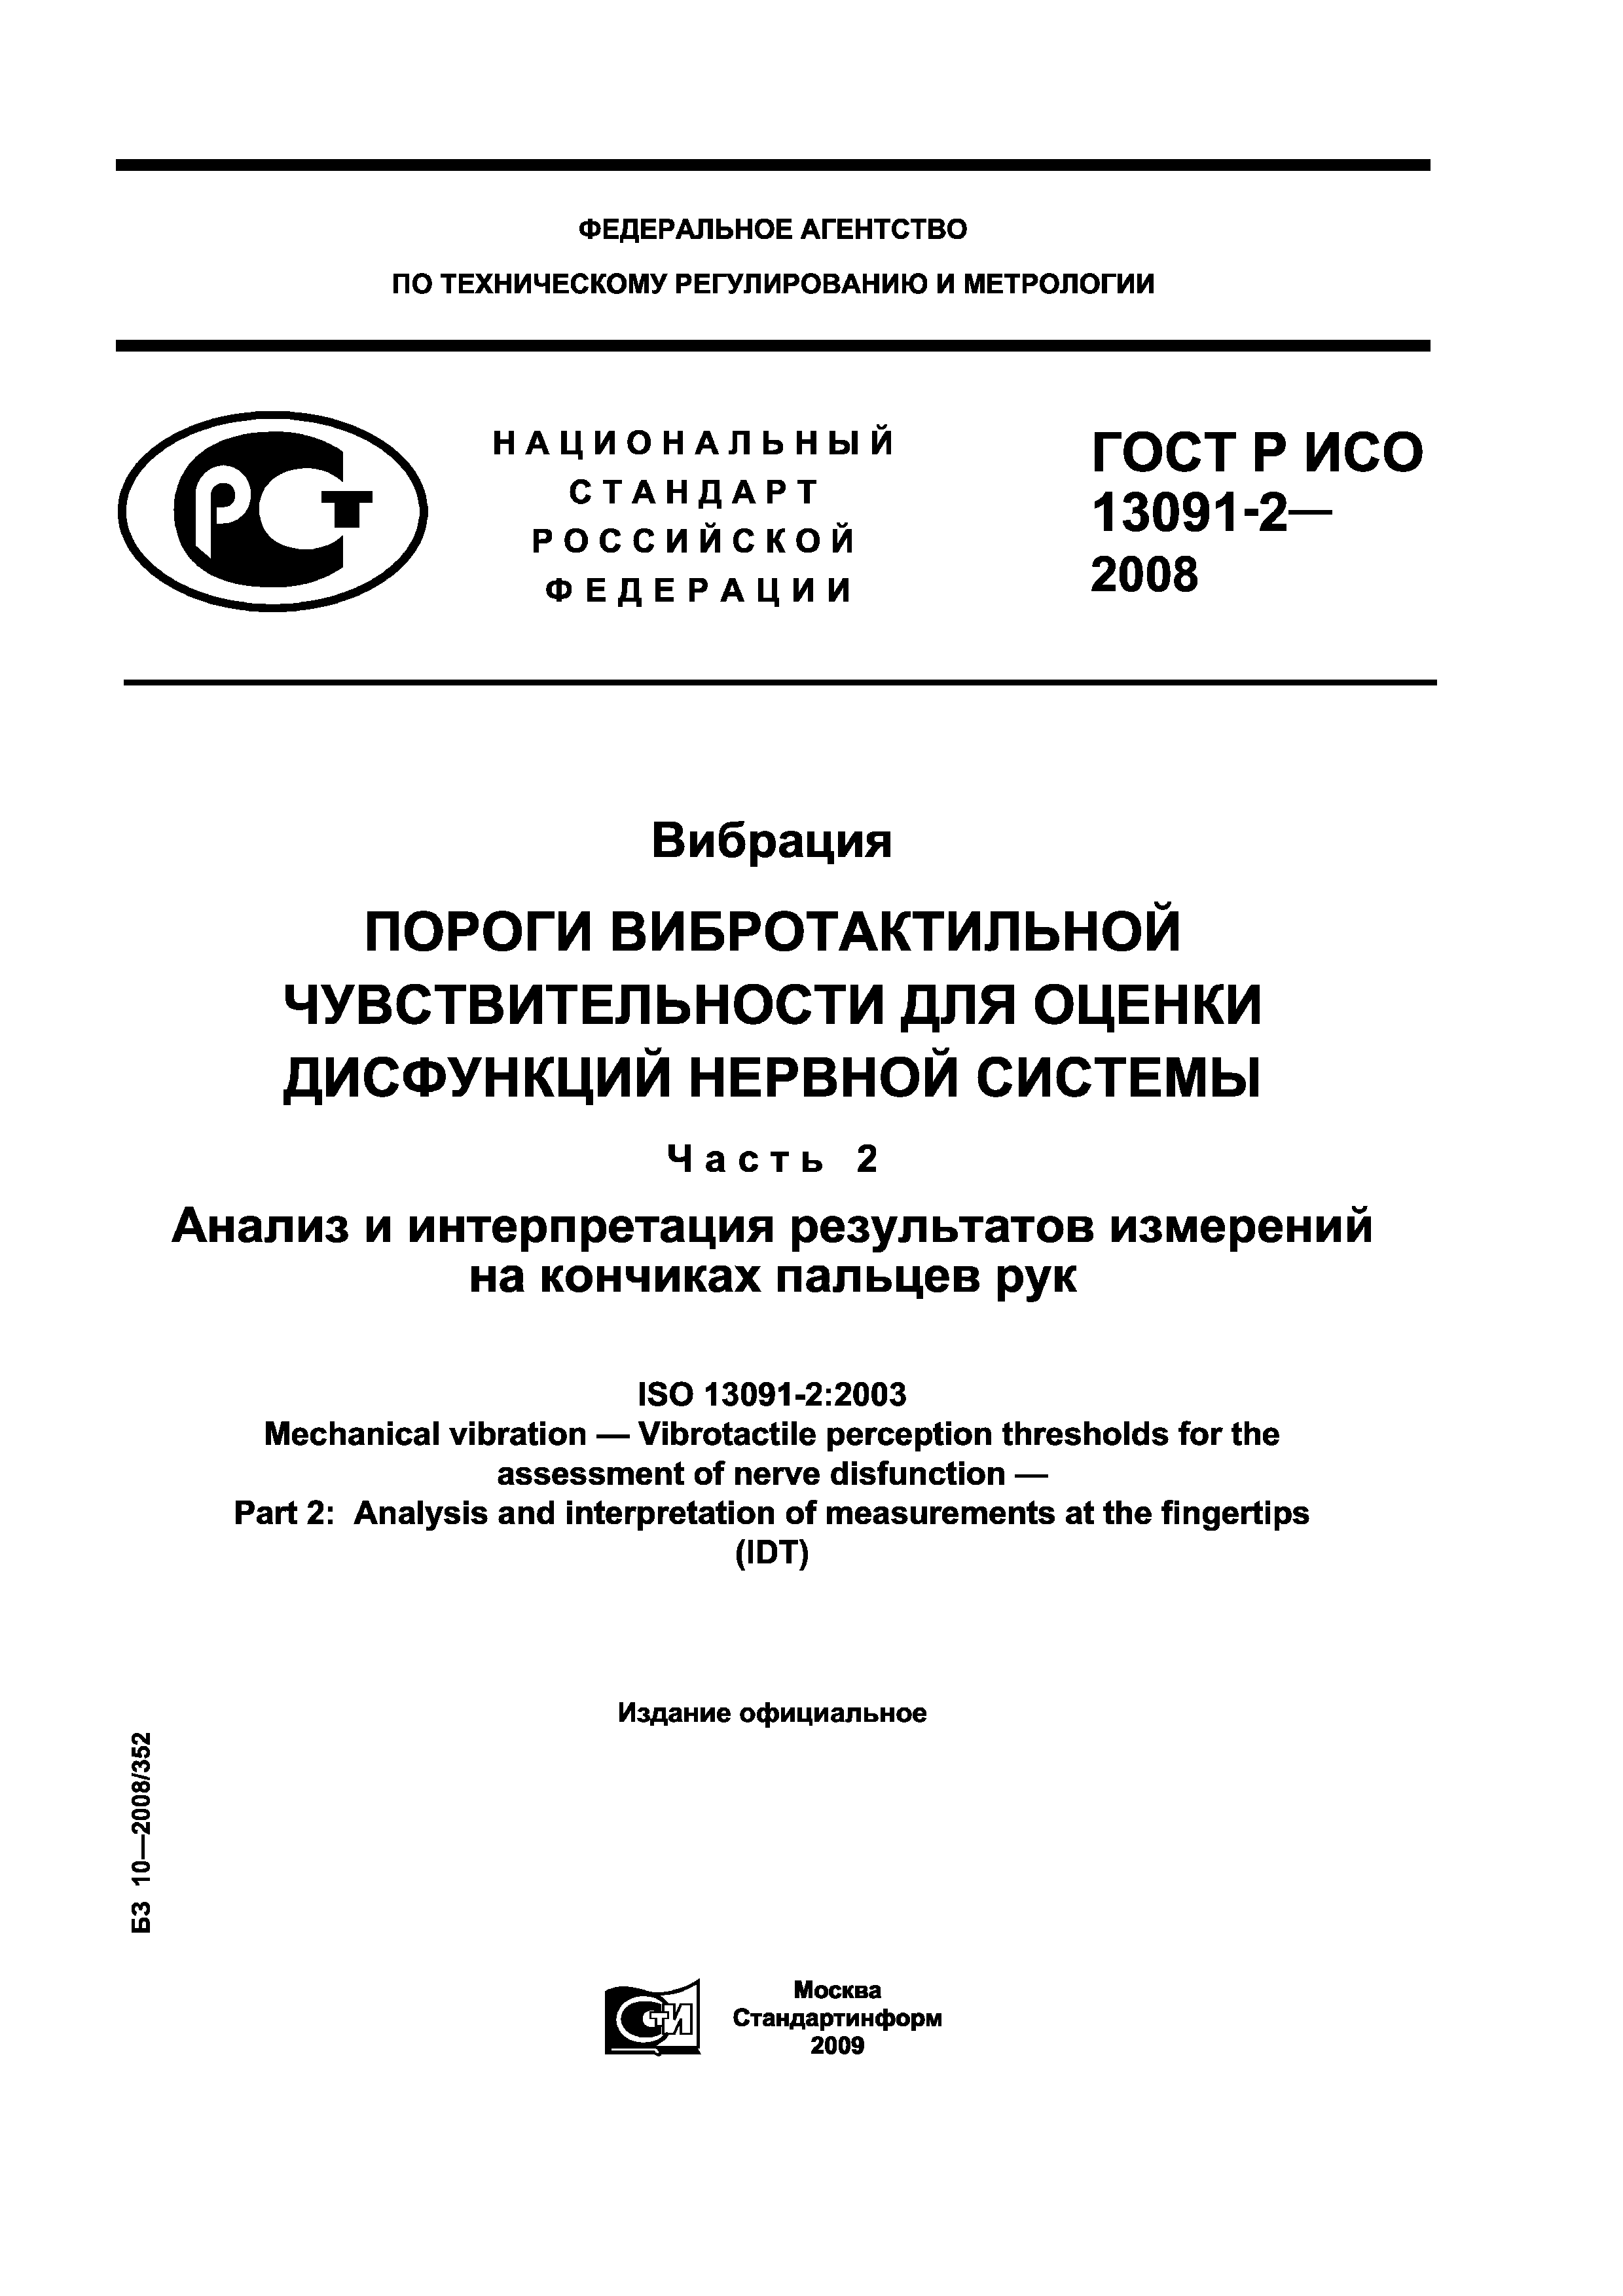 ГОСТ Р ИСО 13091-2-2008